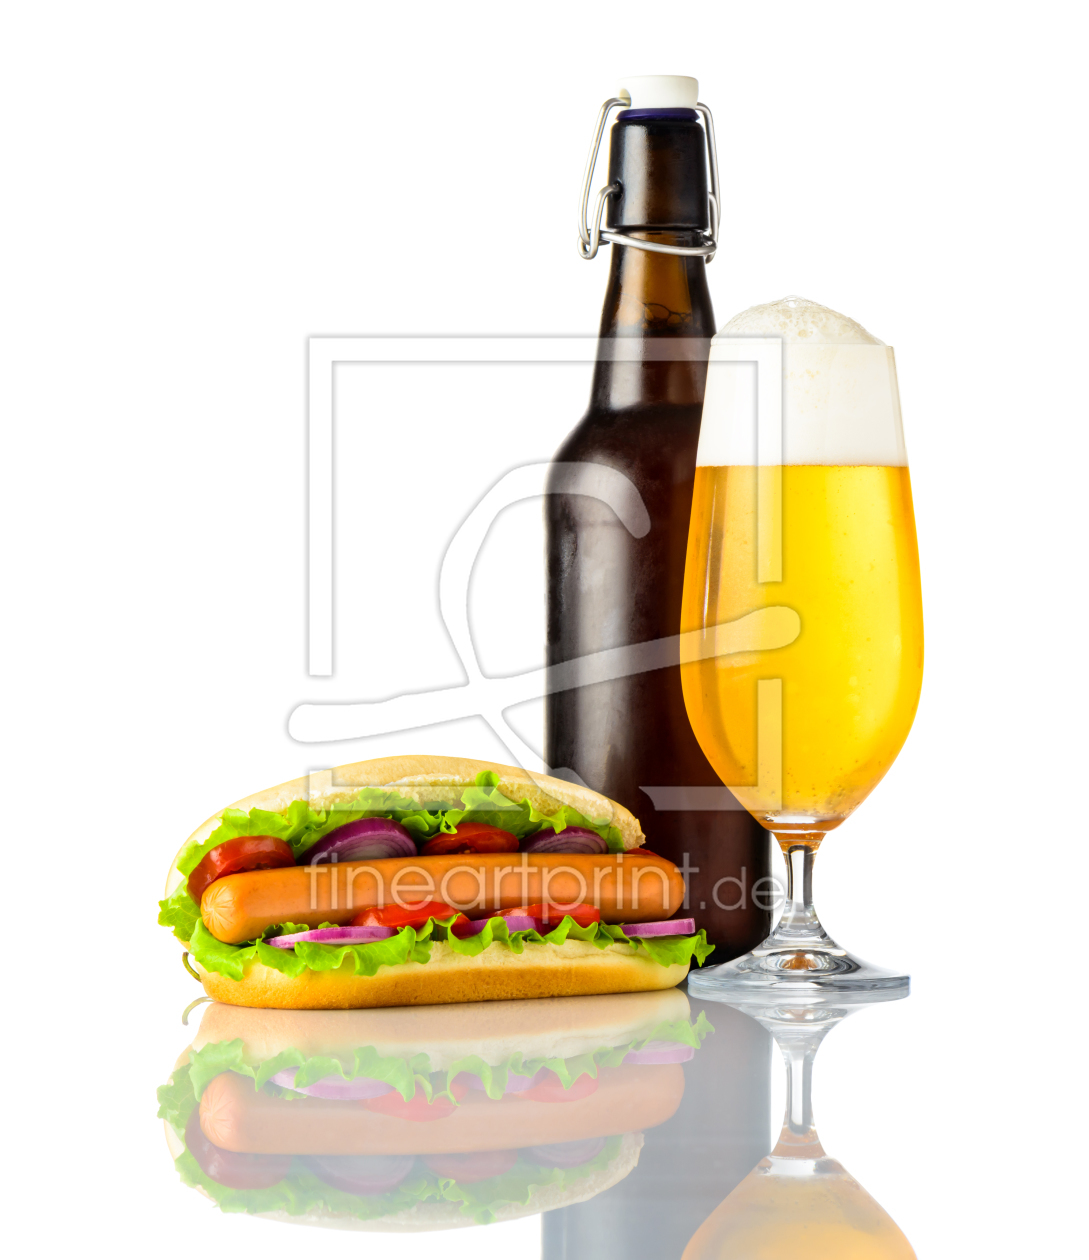 Bild-Nr.: 11830341 Hot Dog mit Bier auf Weißem Hintergrund erstellt von xfotostudio